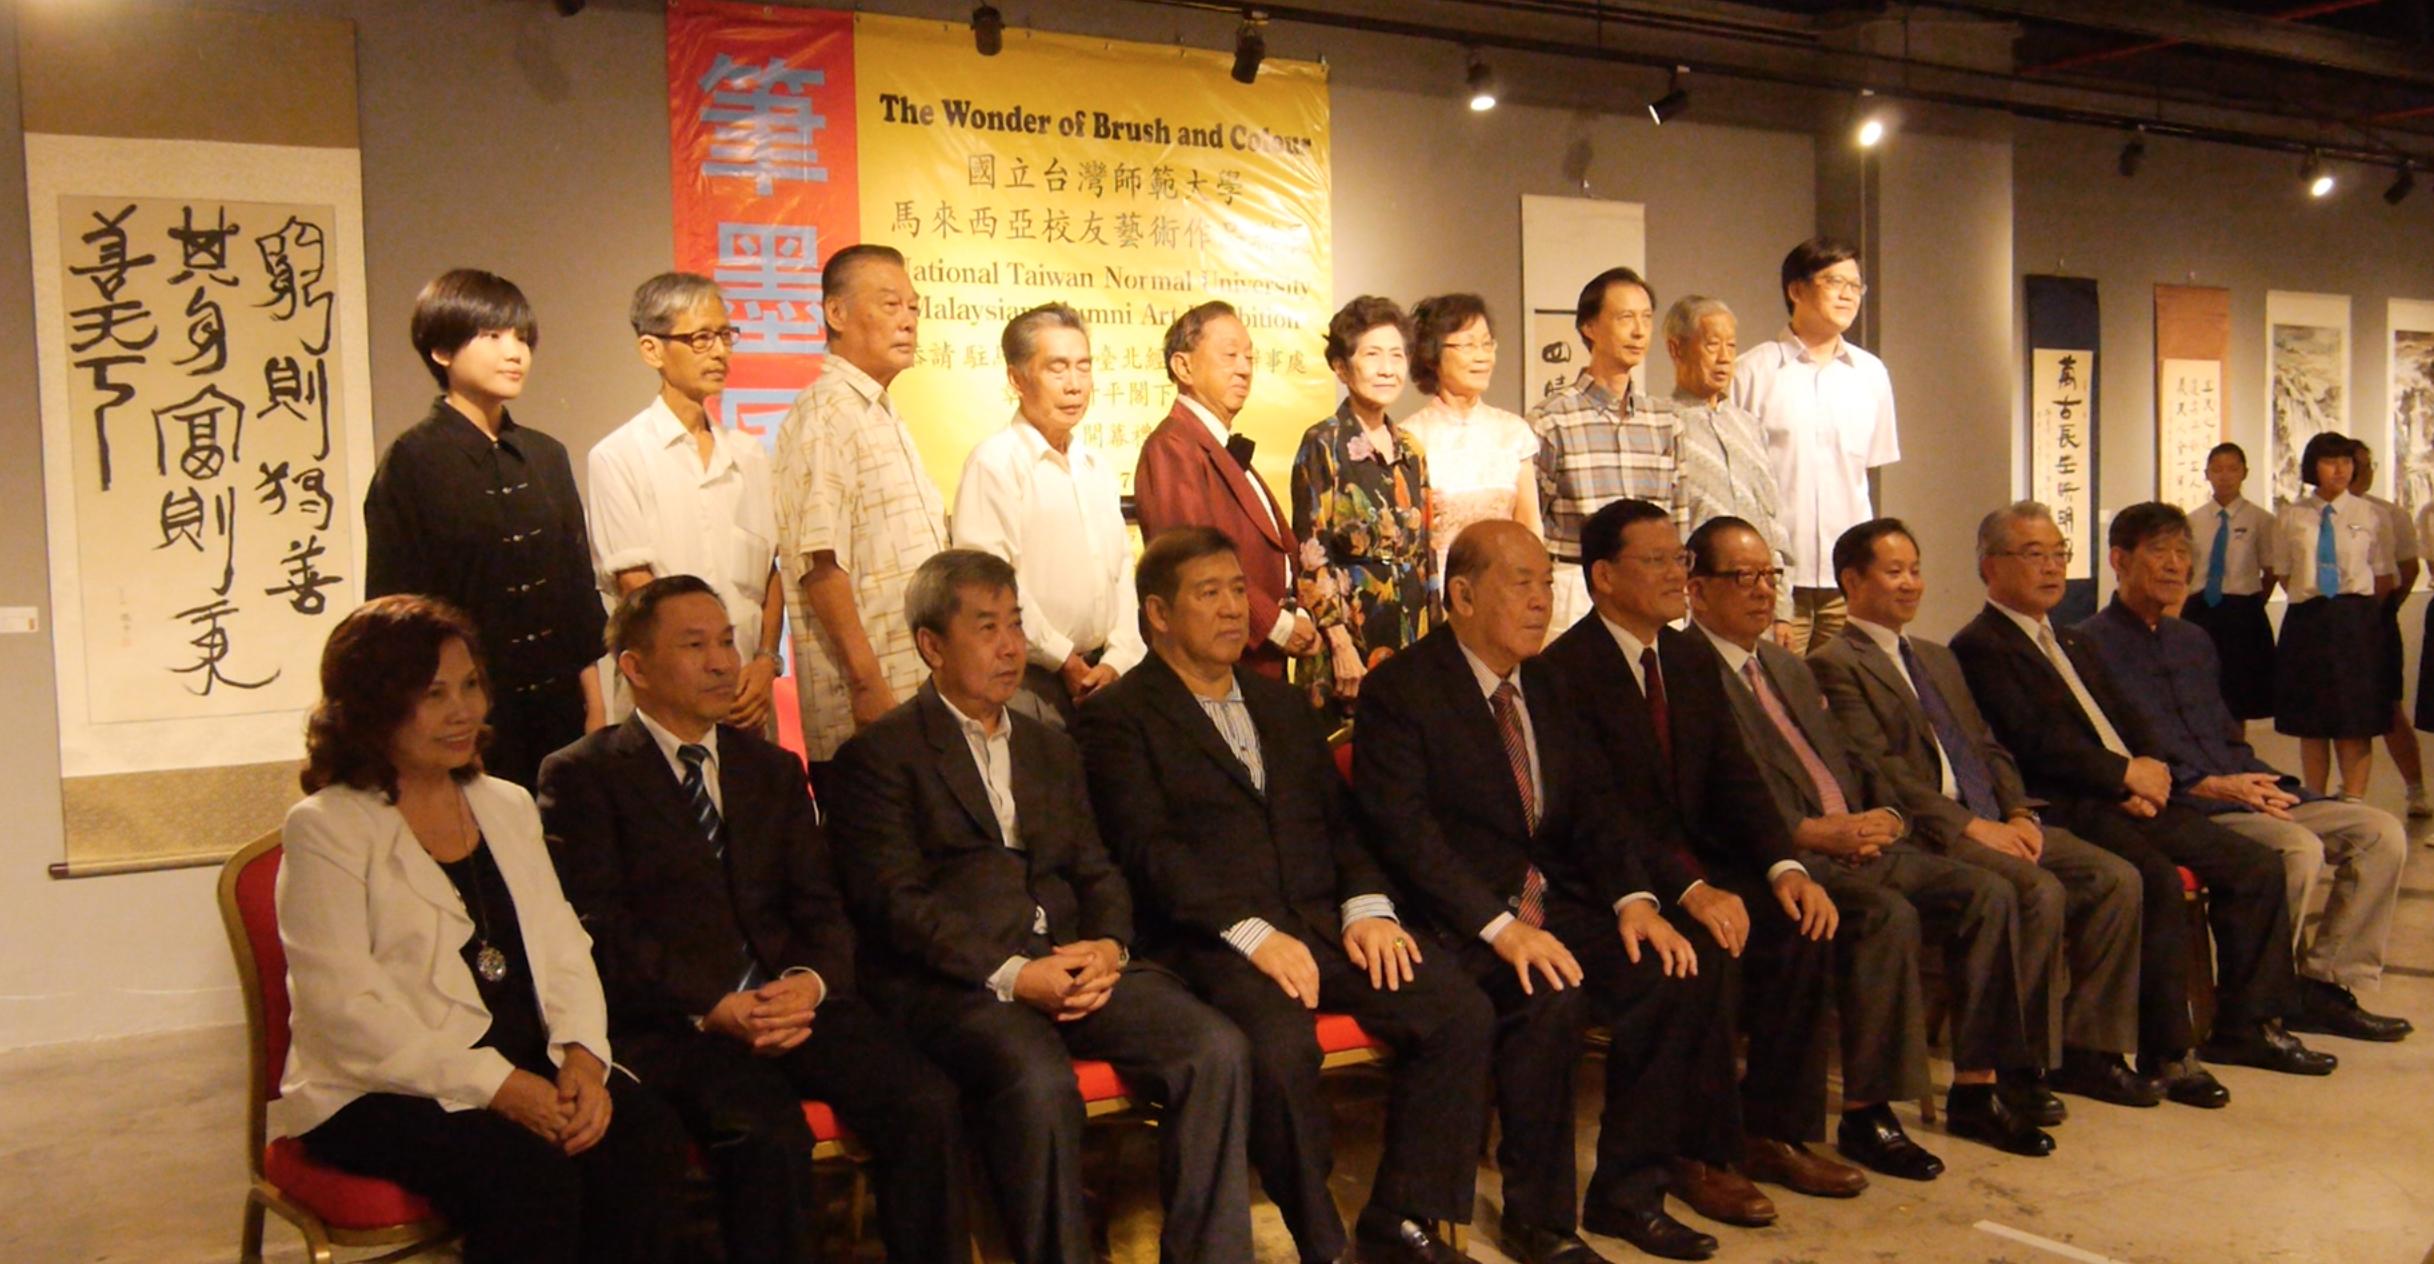 章大使計平(前排左6)、YTL集團董事主席楊忠禮博士(前排右4) 和與會貴賓合影留念。
